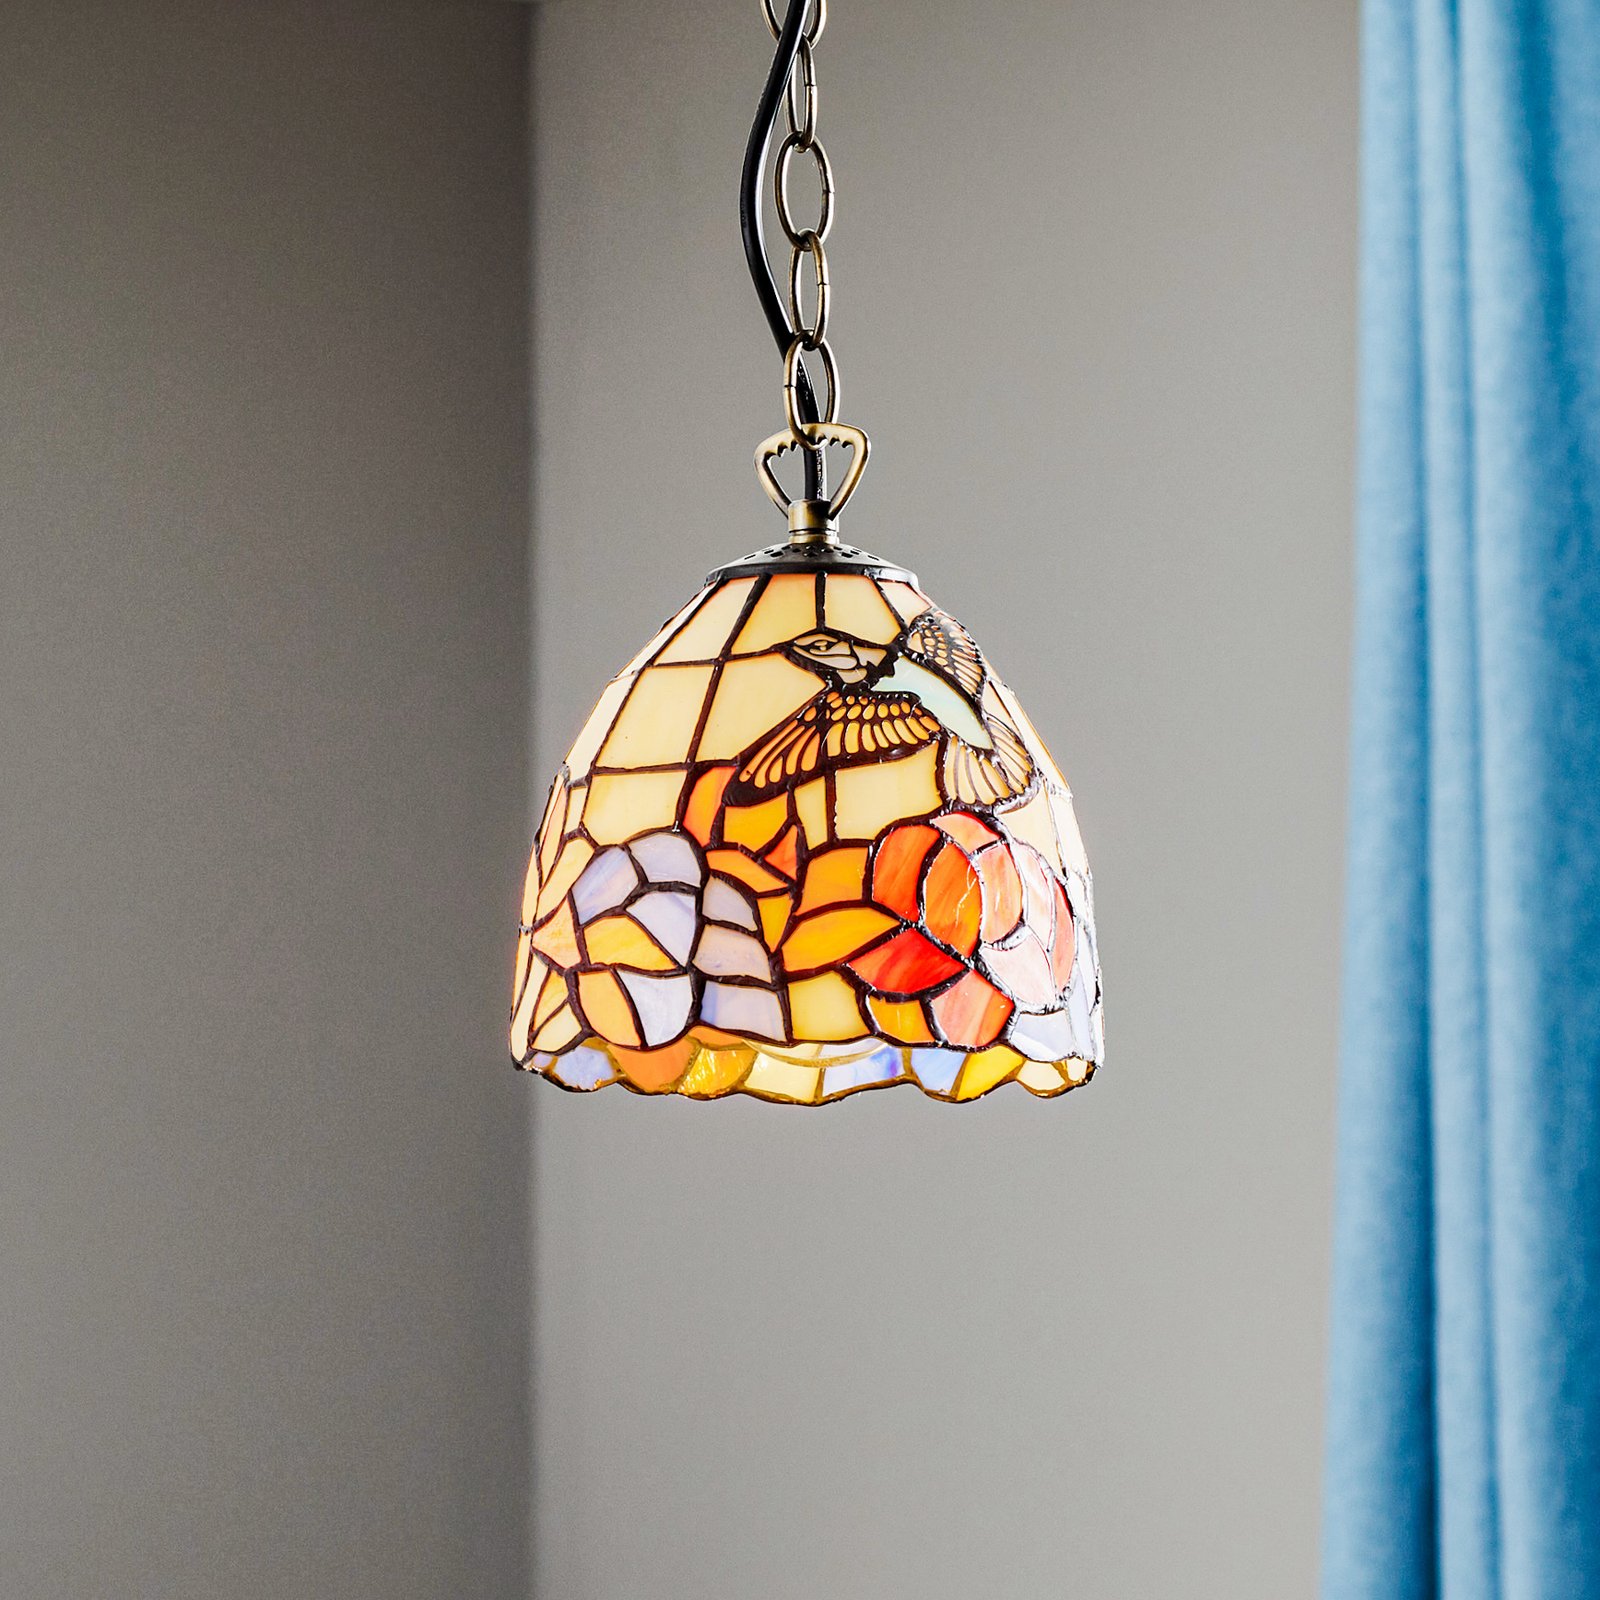 Hanglamp COLIBRI in Tiffany-stijl